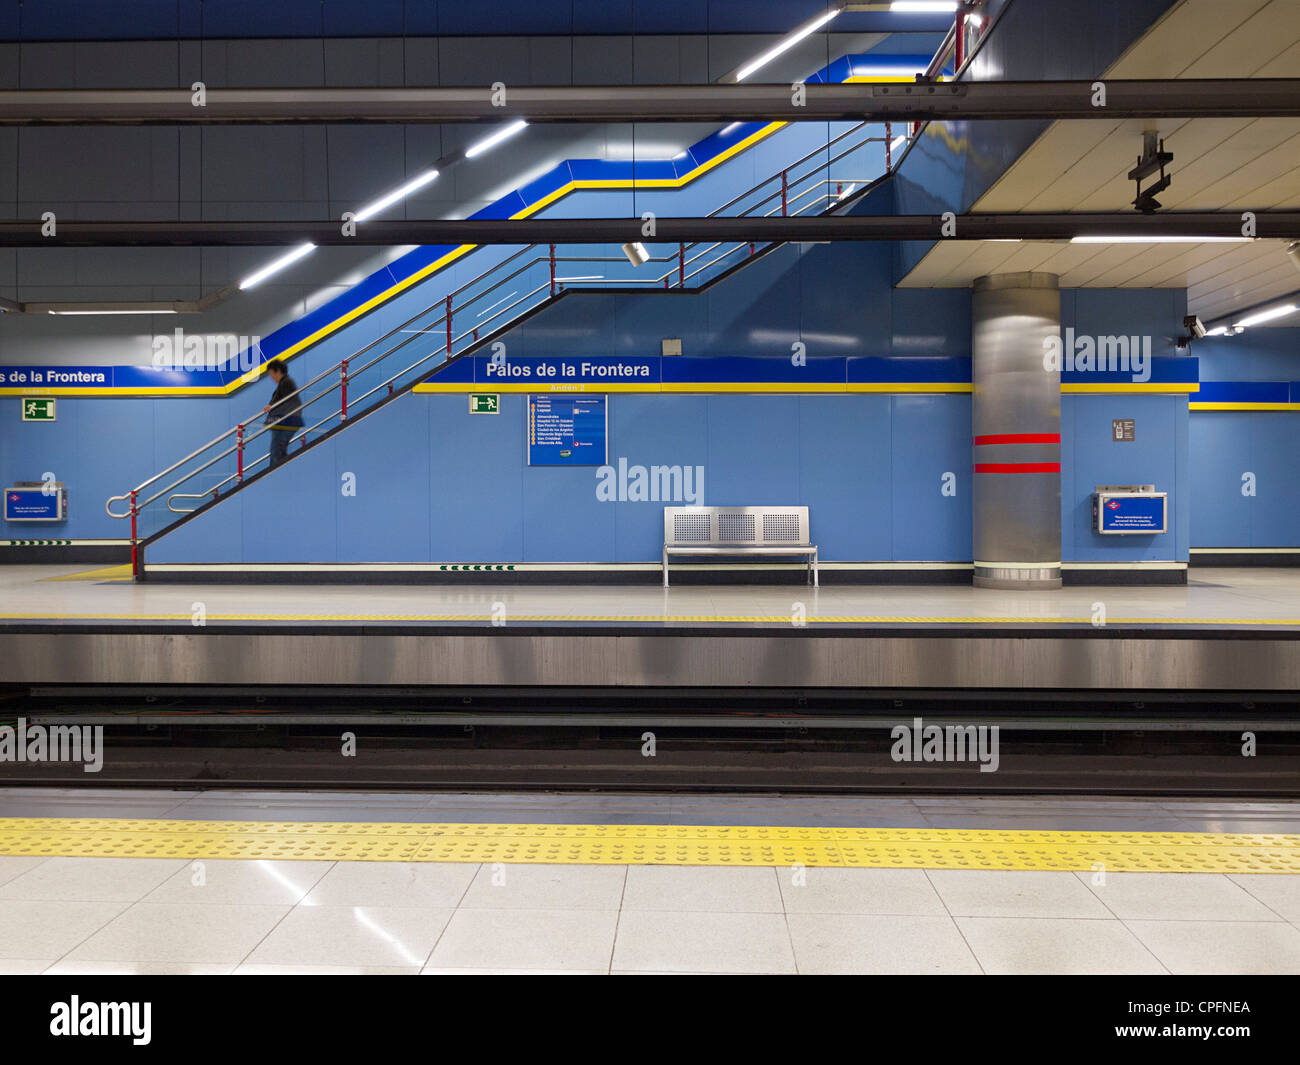 Palos de La Frontera, en la estación de metro de Madrid, España Foto de stock